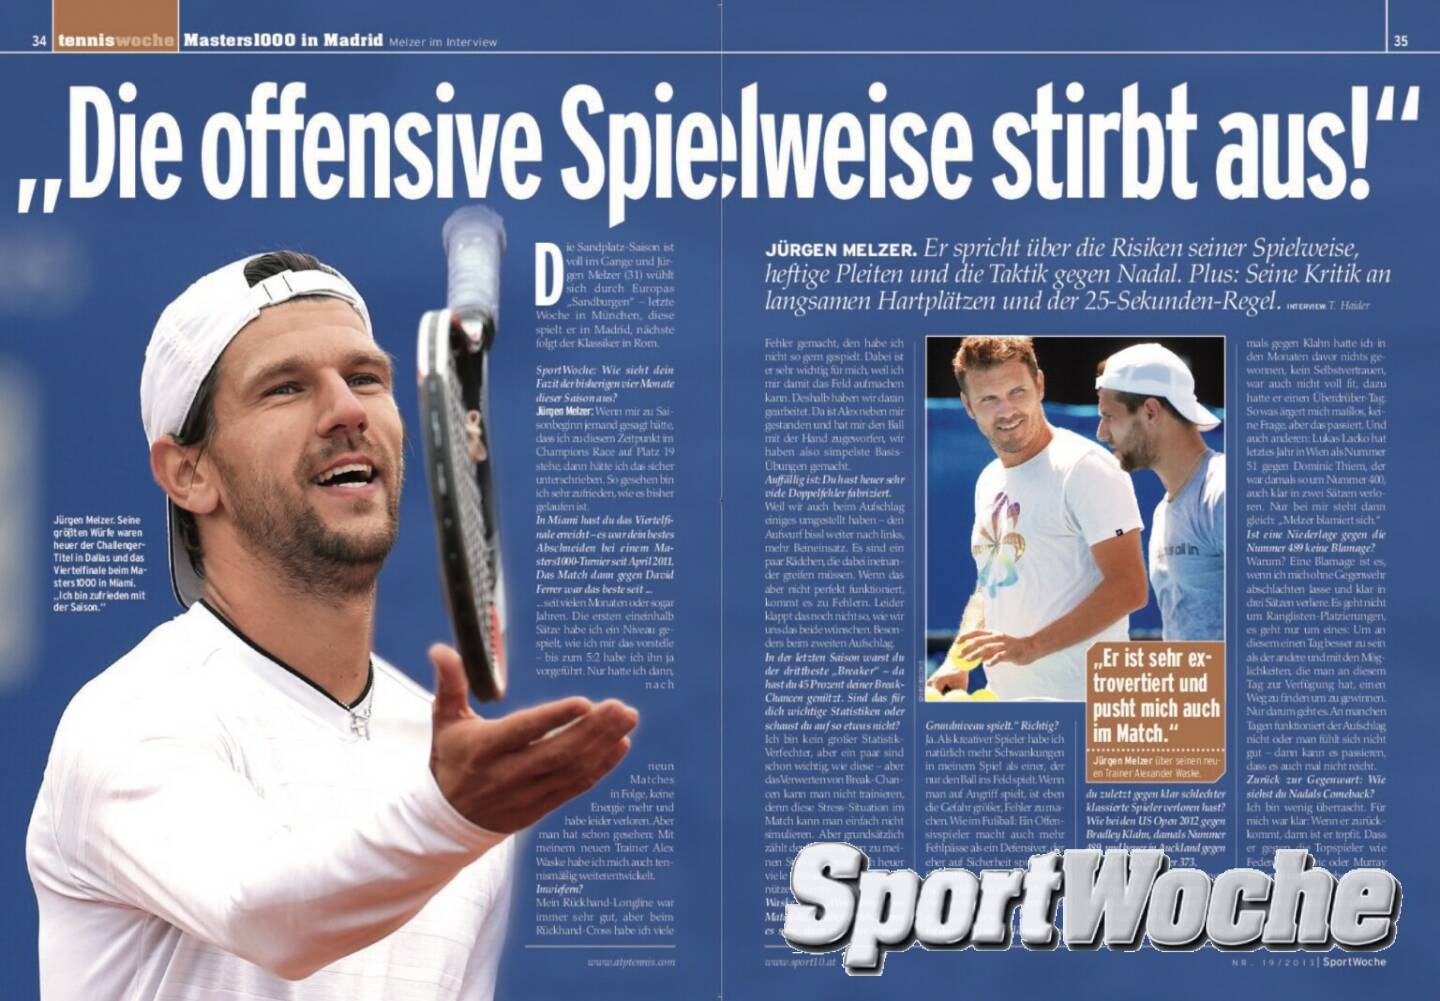 NÖ-Kalender der SportWoche, Tag 5: Jürgen Melzer ist Sportler des Jahres in Österreich und Niederösterreich, 27facher Sieger auf der ATP-Tour (5 Einzel, 22 Doppel) und der einzige Österreicher, der mehrere Grand Slam Titel erreicht hat.